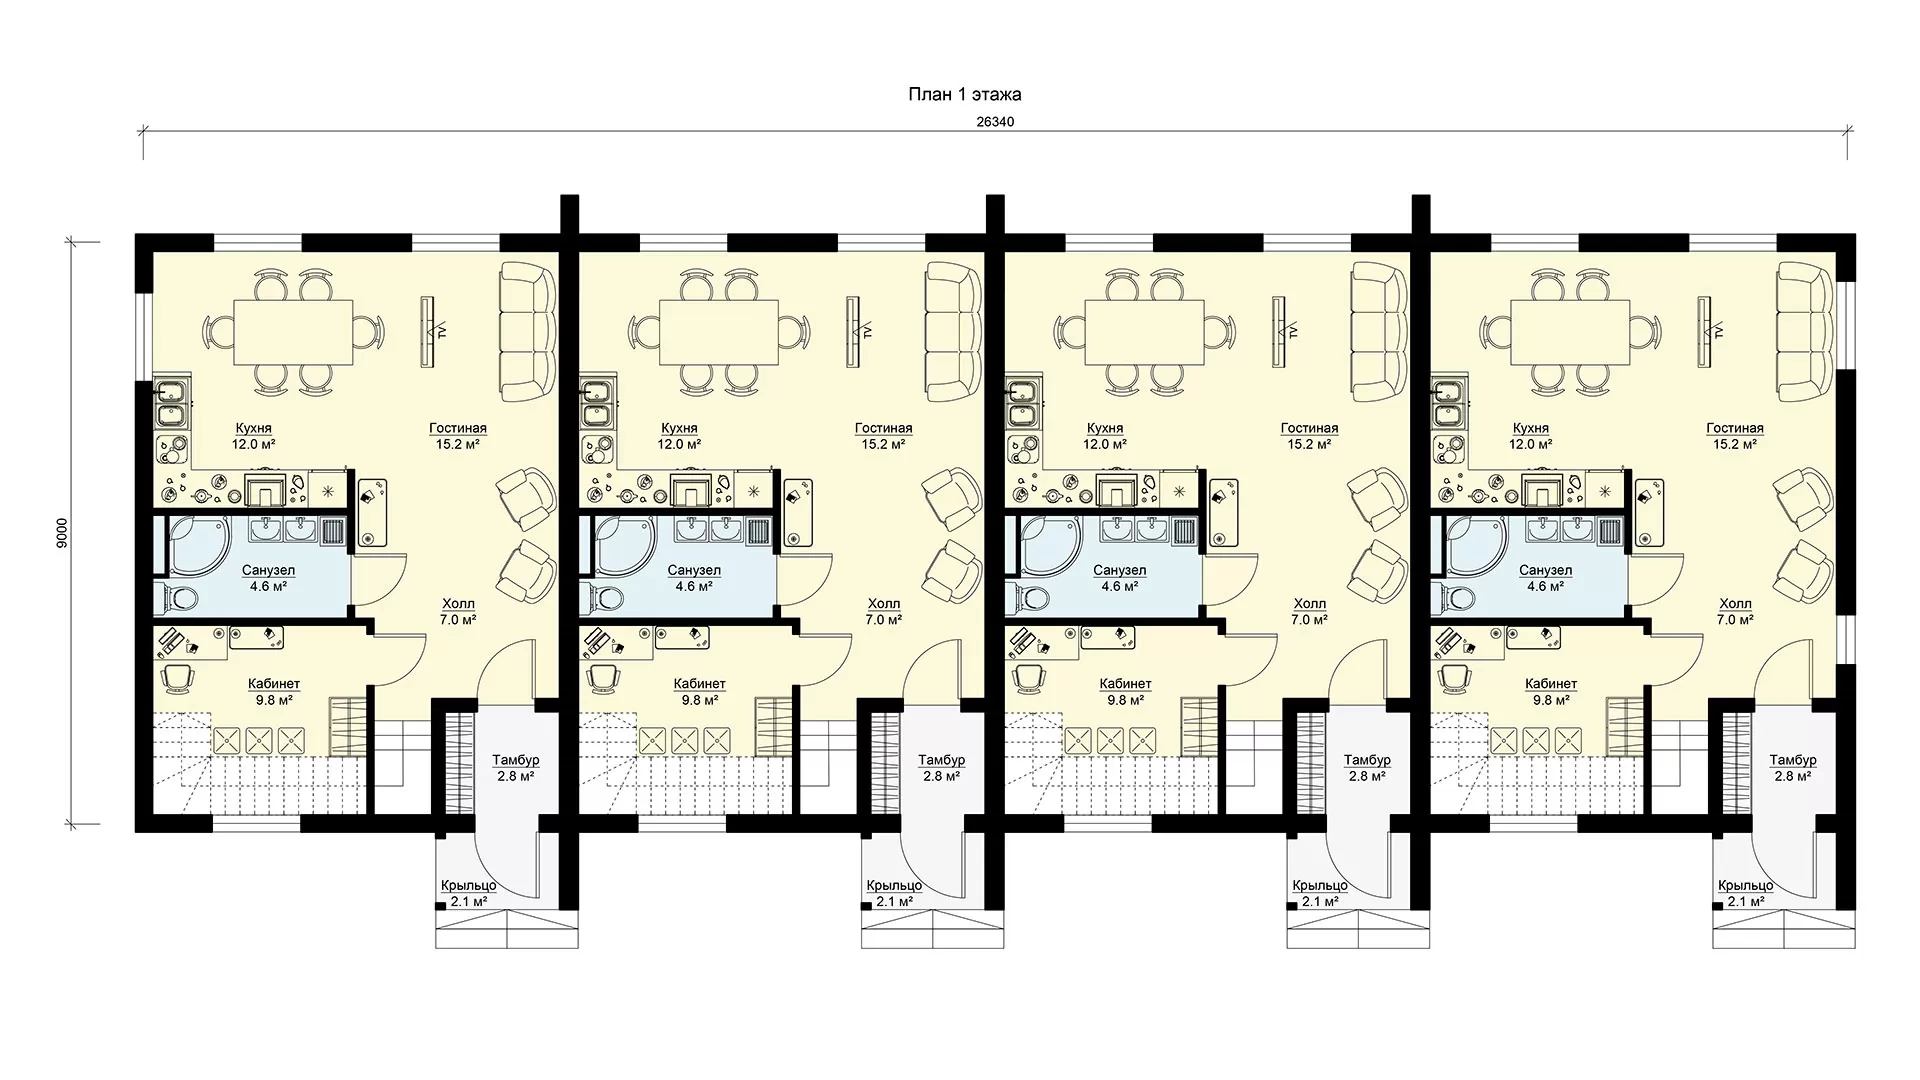 Планировка 1 этажа двухэтажный многоквартирный дом для 4 семей, проекта МС-425